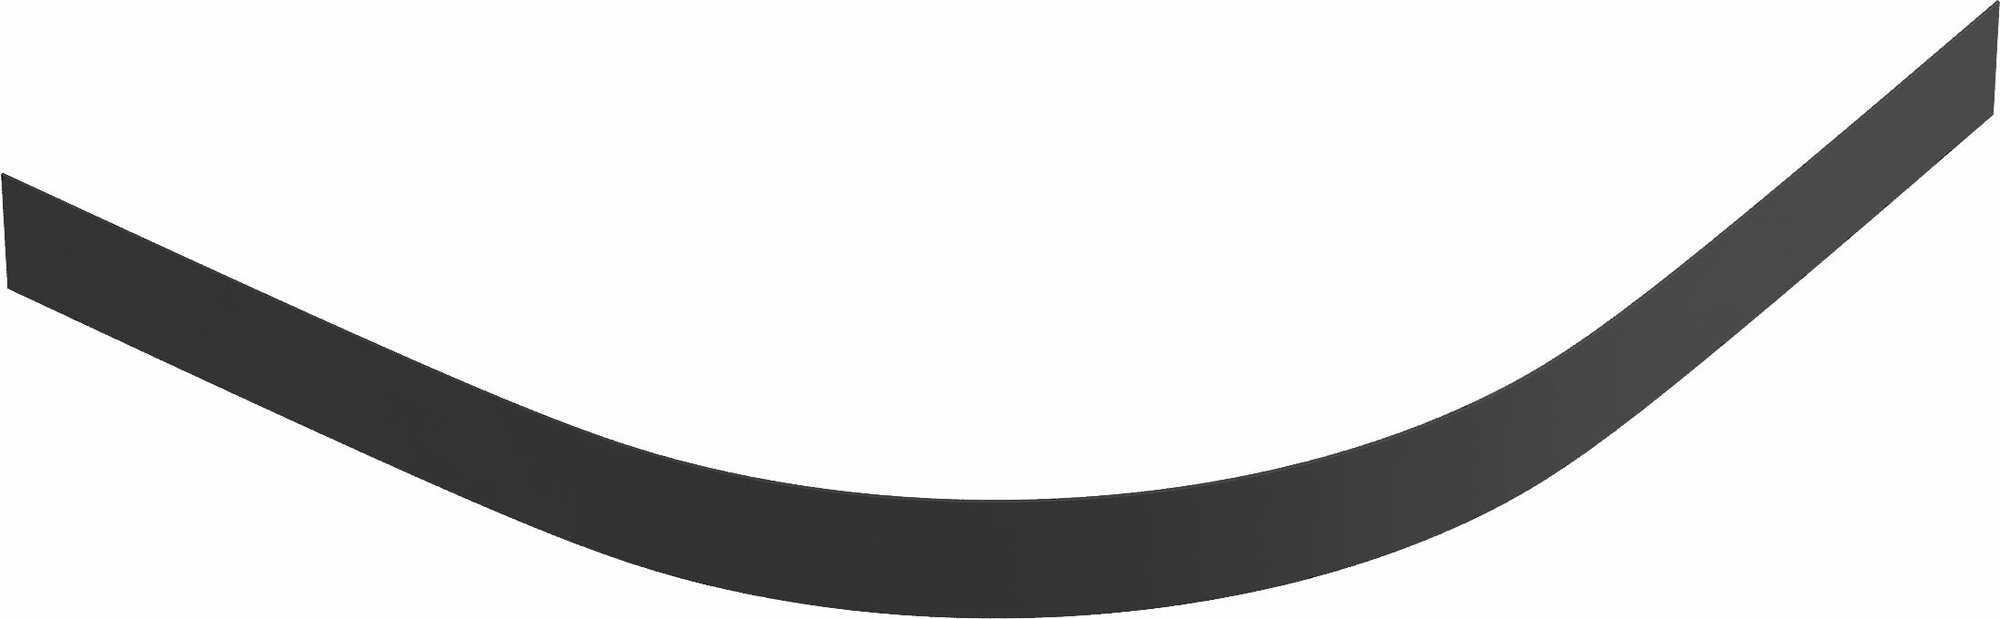 Панель душевого поддона Keram 1/4 круга ABS-пластик 90x90 см цвет черный